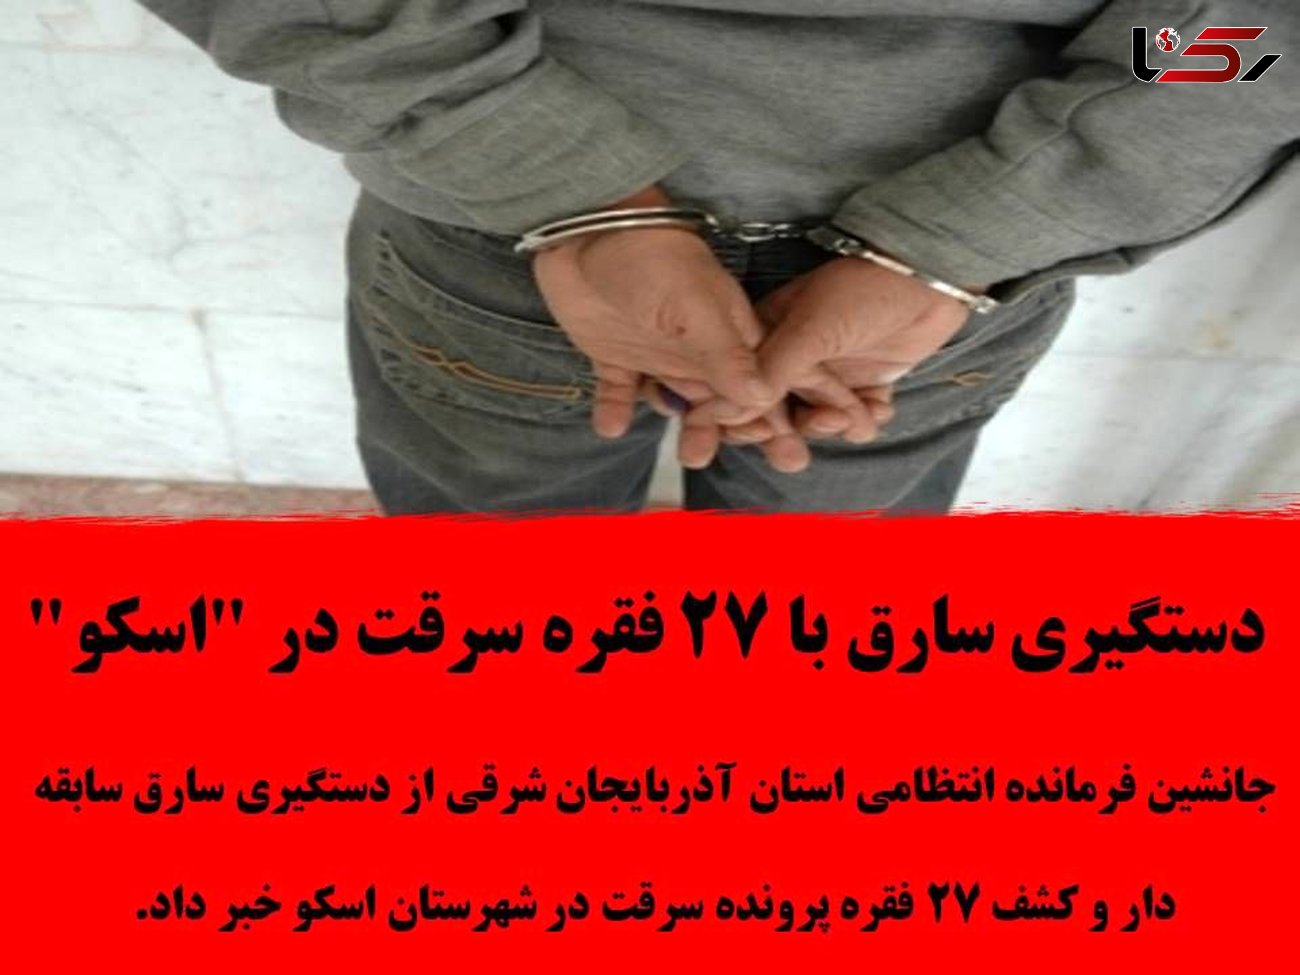 دستگیری سارق با 27 فقره سرقت در "اسکو"